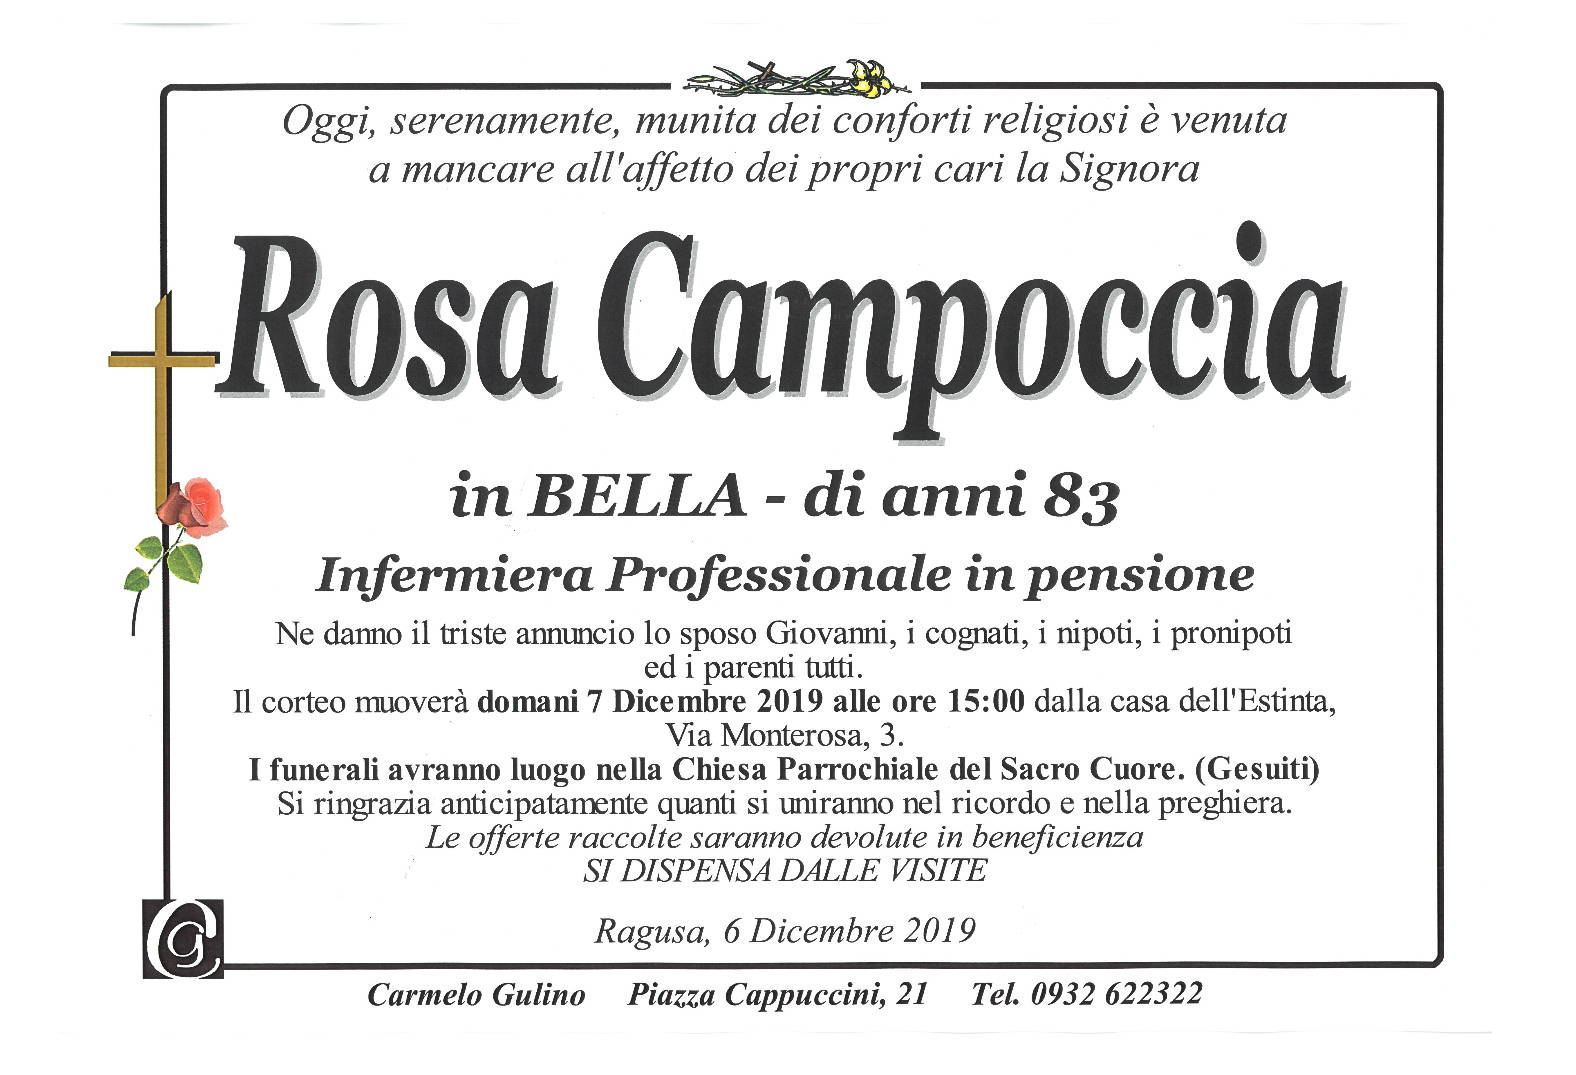 Rosa Campoccia